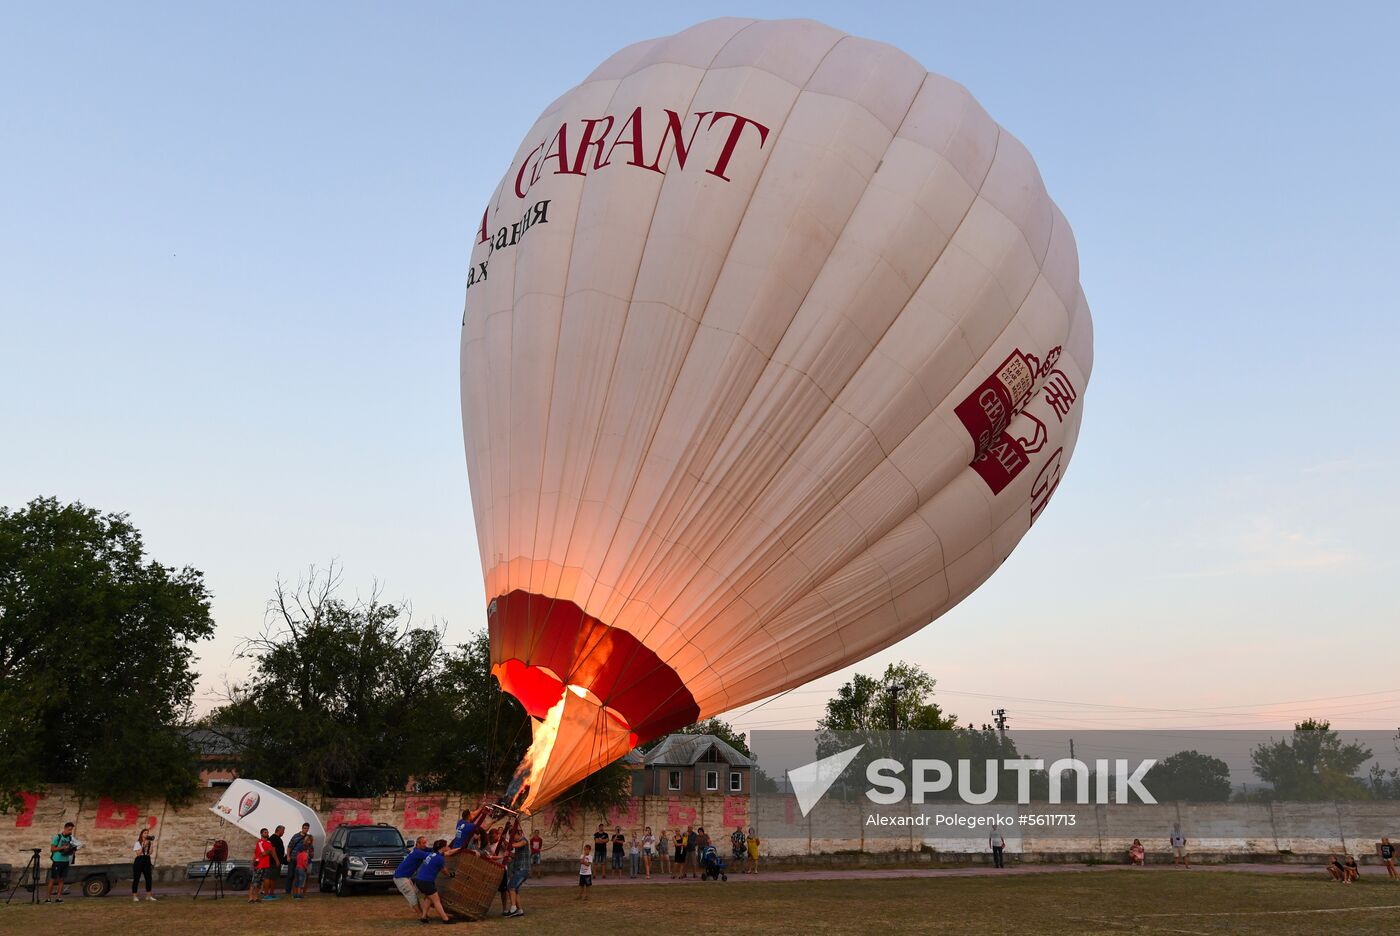 White Rock hot air balloon festival